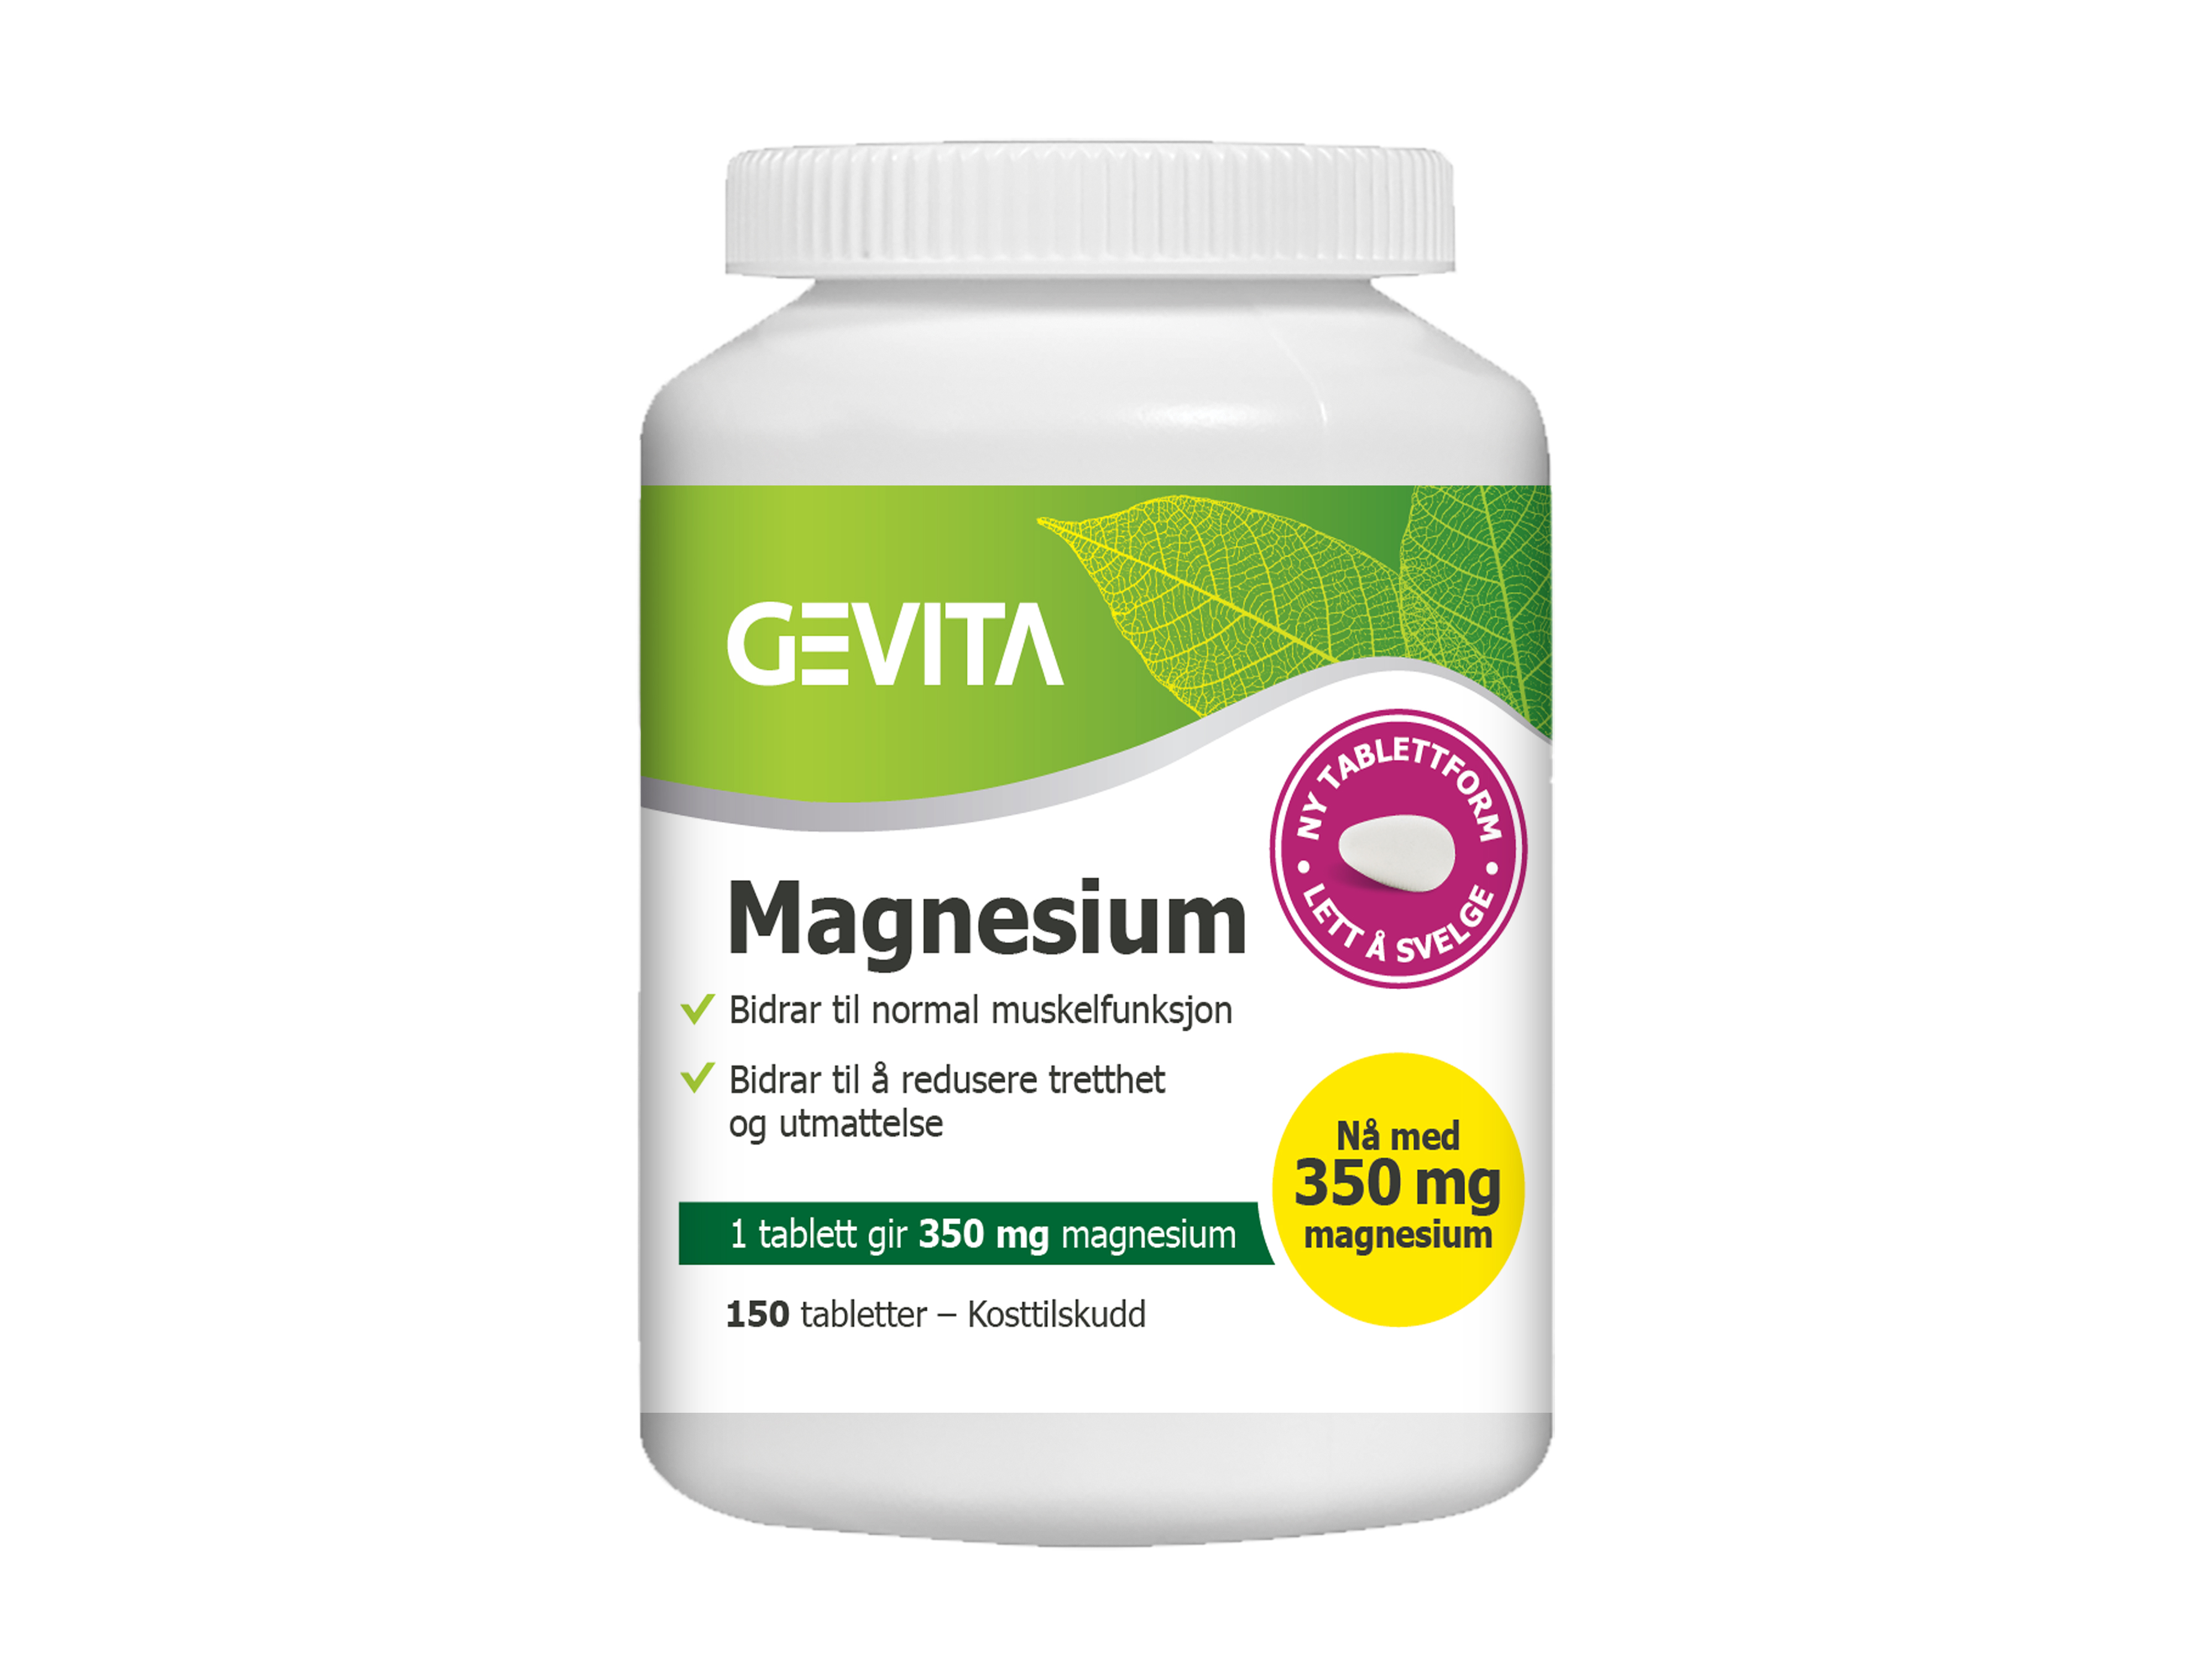 Gevita Magnesium tab 350mg, 150 stk.